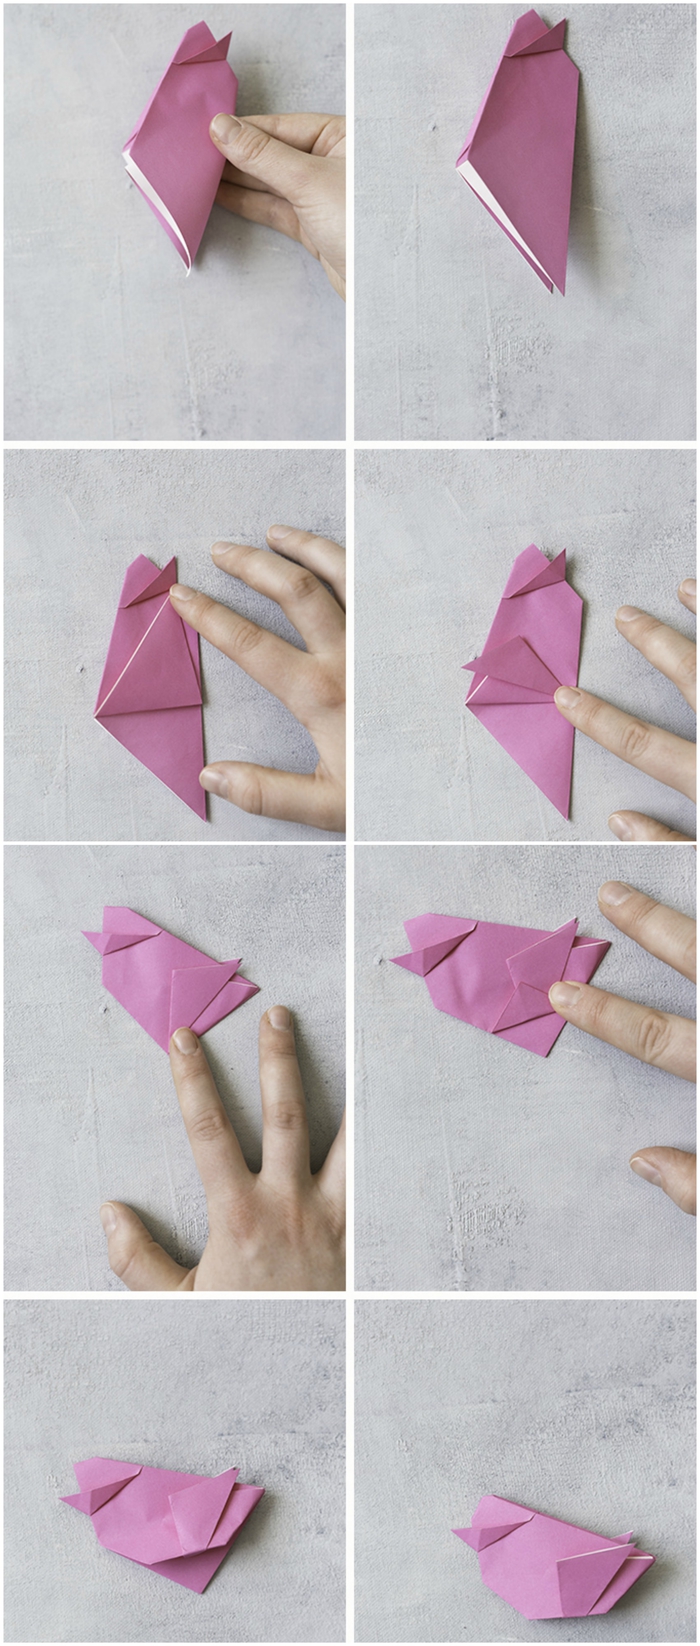 tuto origami pour réaliser un joli oiseau en papier qui pourrait être utiliser pour la déco de la table de pâques